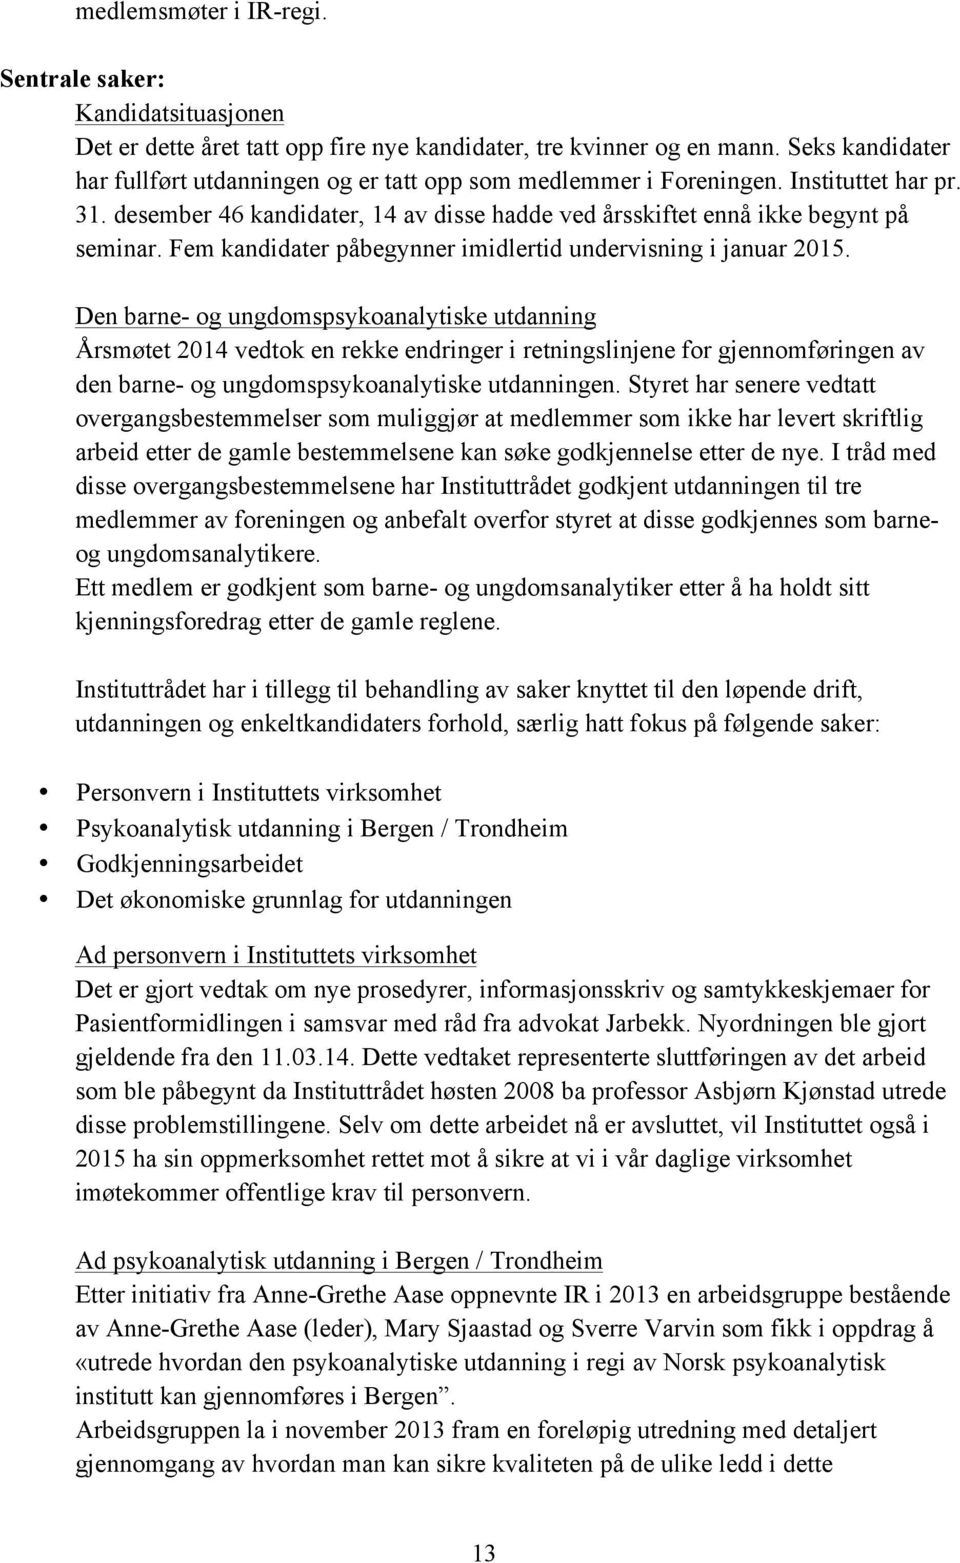 NORSK PSYKOANALYTISK FORENING NORSK PSYKOANALYTISK INSTITUTT - PDF ...